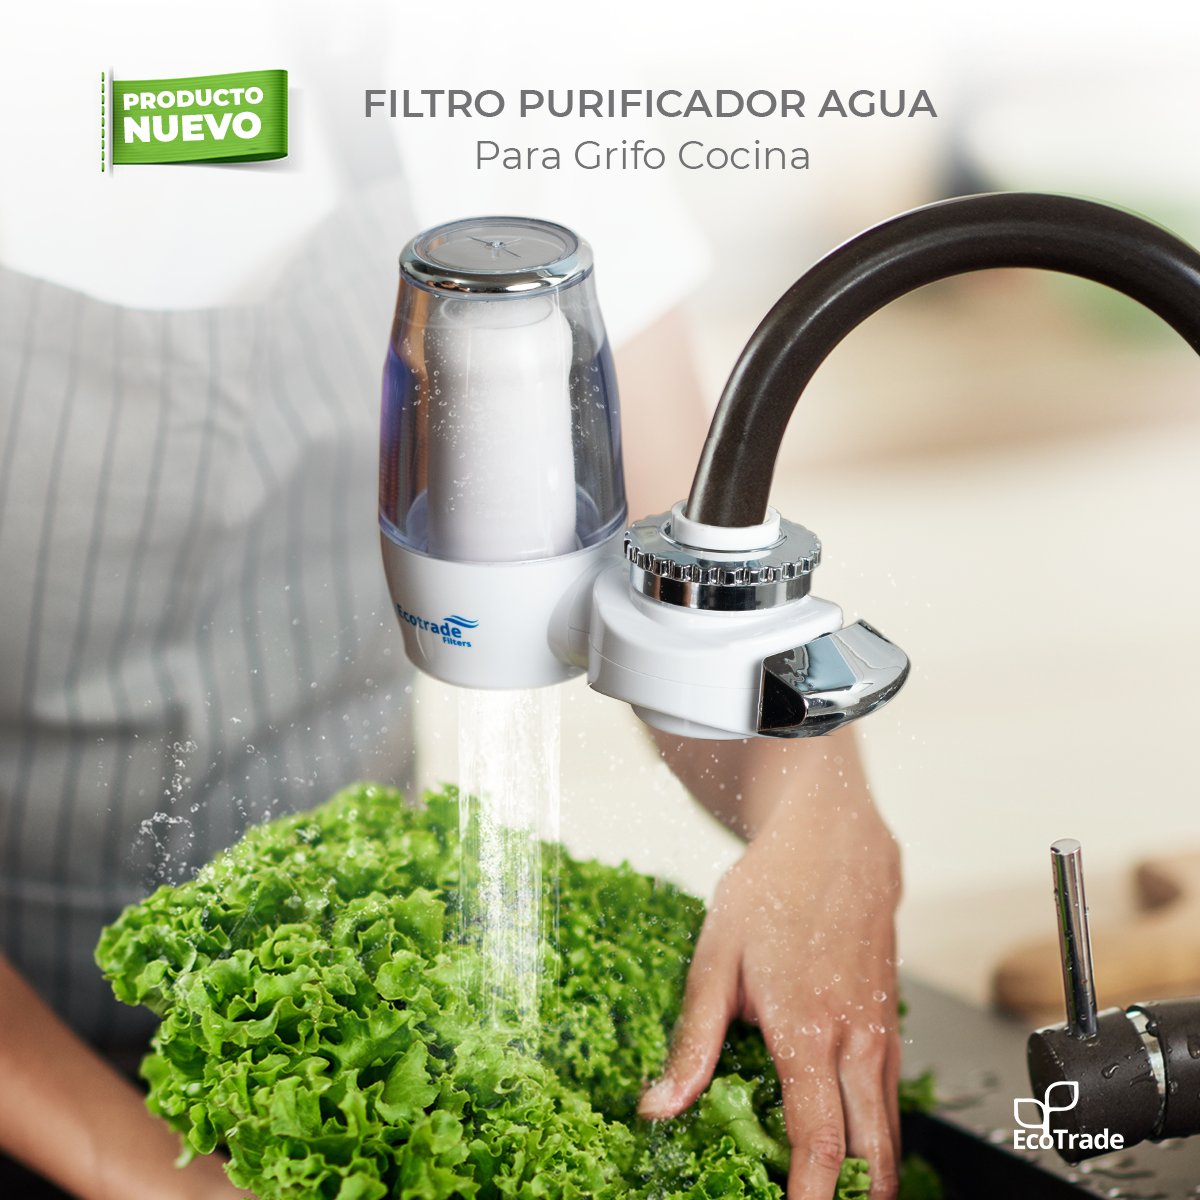 Ecotrade on X: ✓Filtro purificador de agua para grifo de cocina casero  Brinda agua limpia y fresca en cuestión de segundos. ✓Es segura y saludable  para lavar verduras, cocinar, lavar etc. Hecho